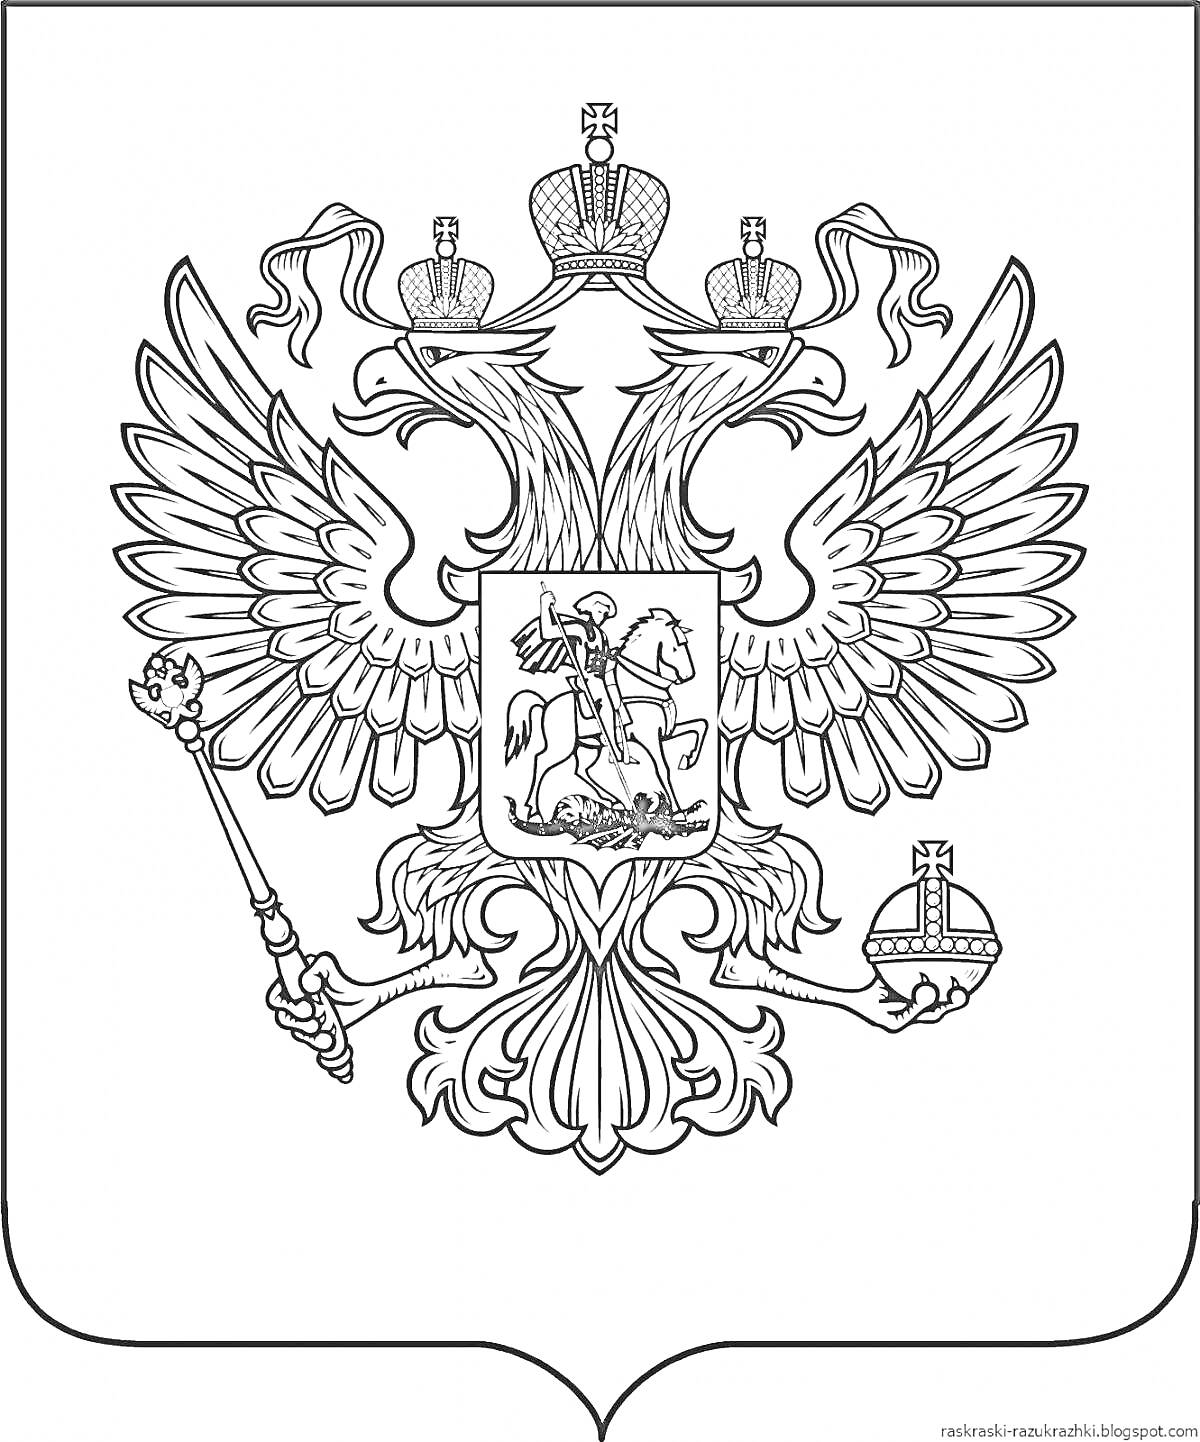 Раскраска Герб России с изображением двуглавого орла; орел с тремя коронами, скипетром в правой лапе и державой в левой; на груди орла изображен Святой Георгий Победоносец, поражающий дракона